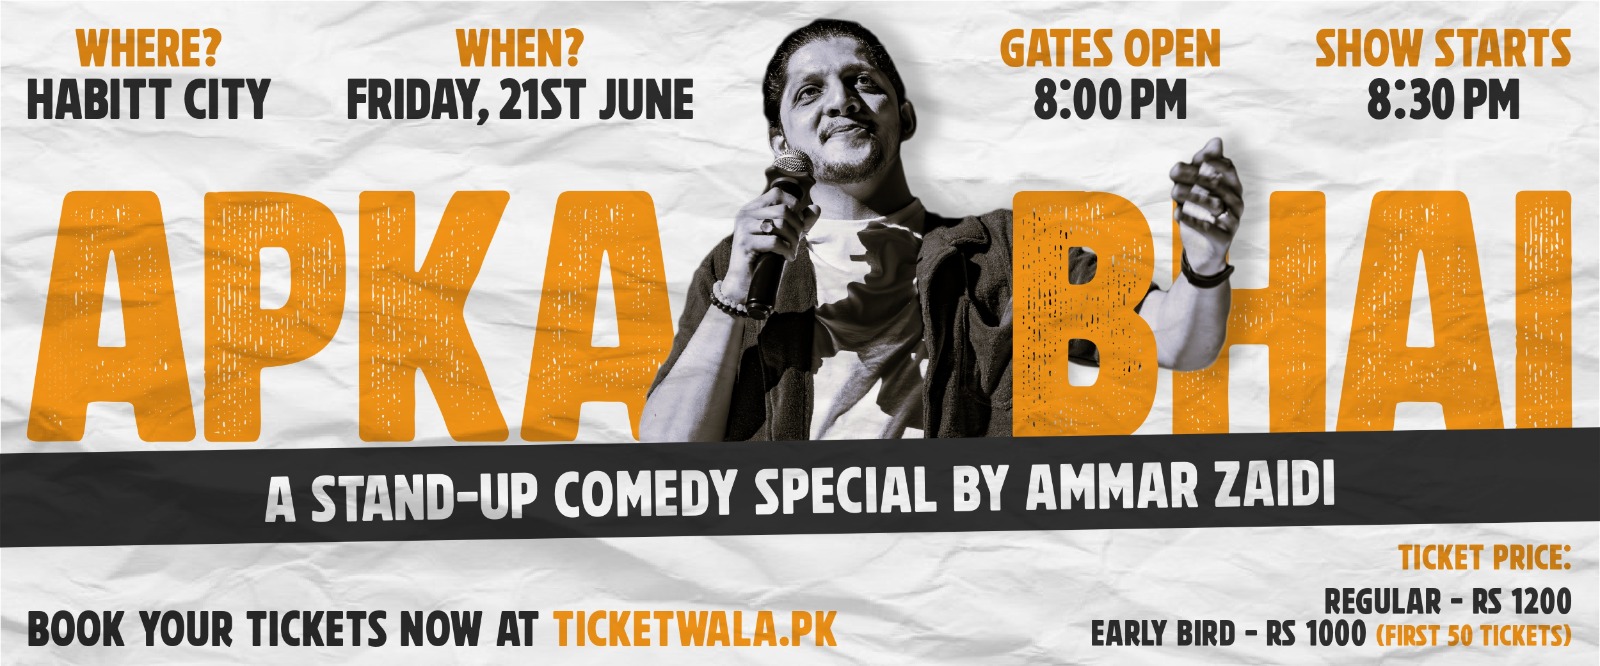 Apka Bhai - A stand-up comedy special by Ammar Zaidi